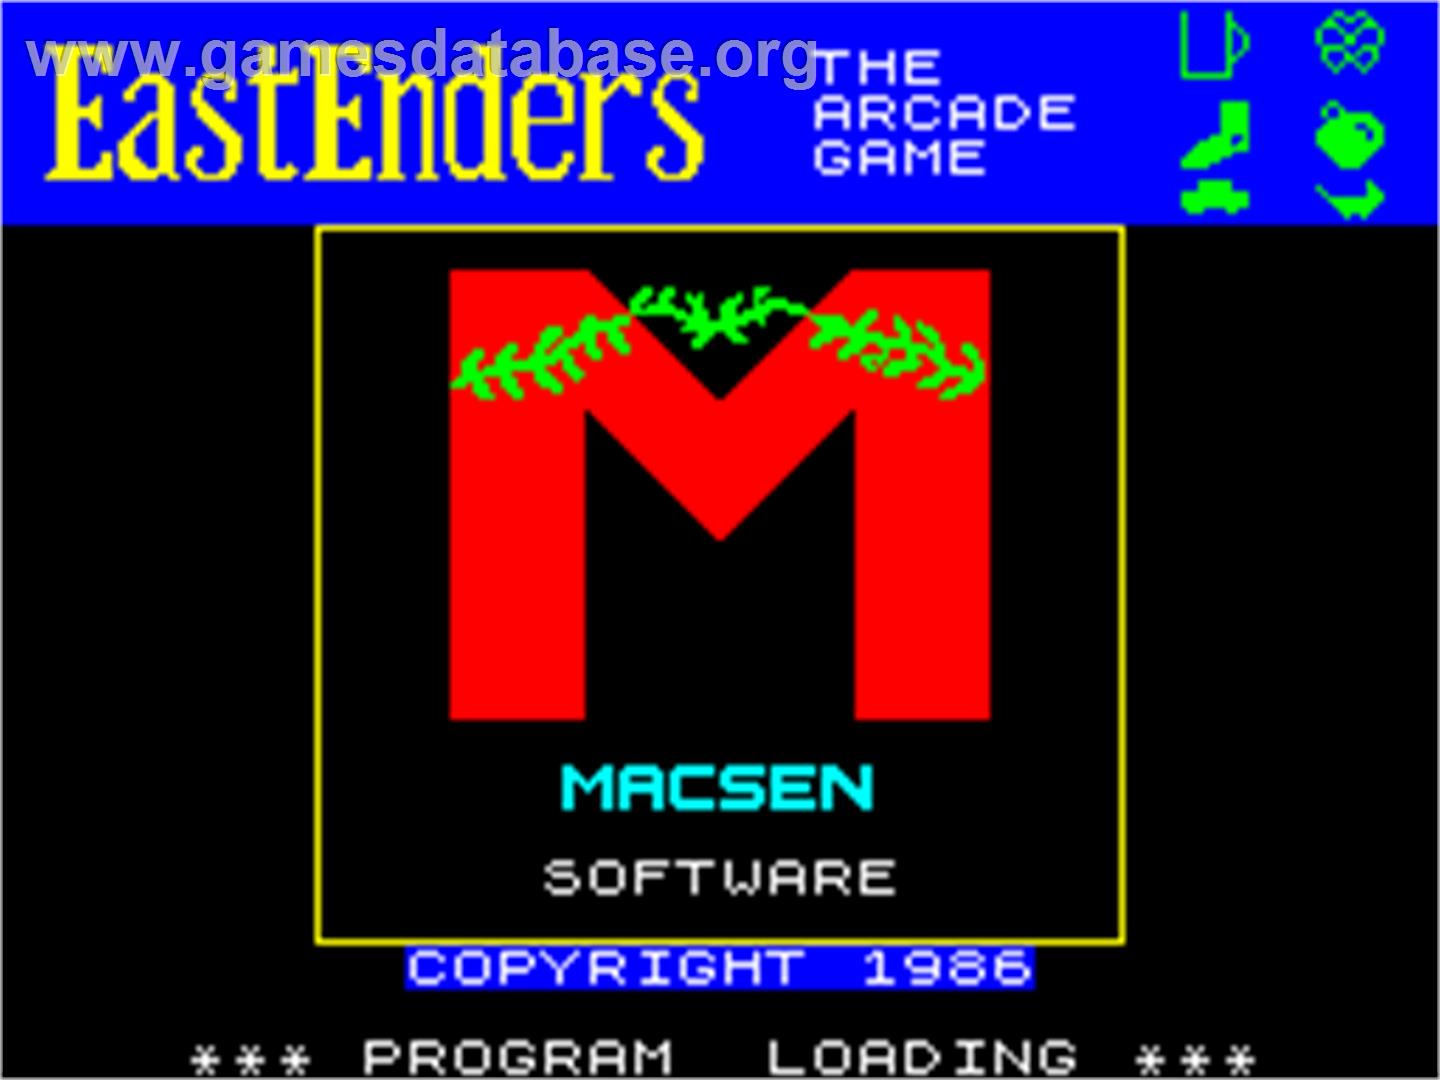 EastEnders - Sinclair ZX Spectrum - Artwork - Title Screen